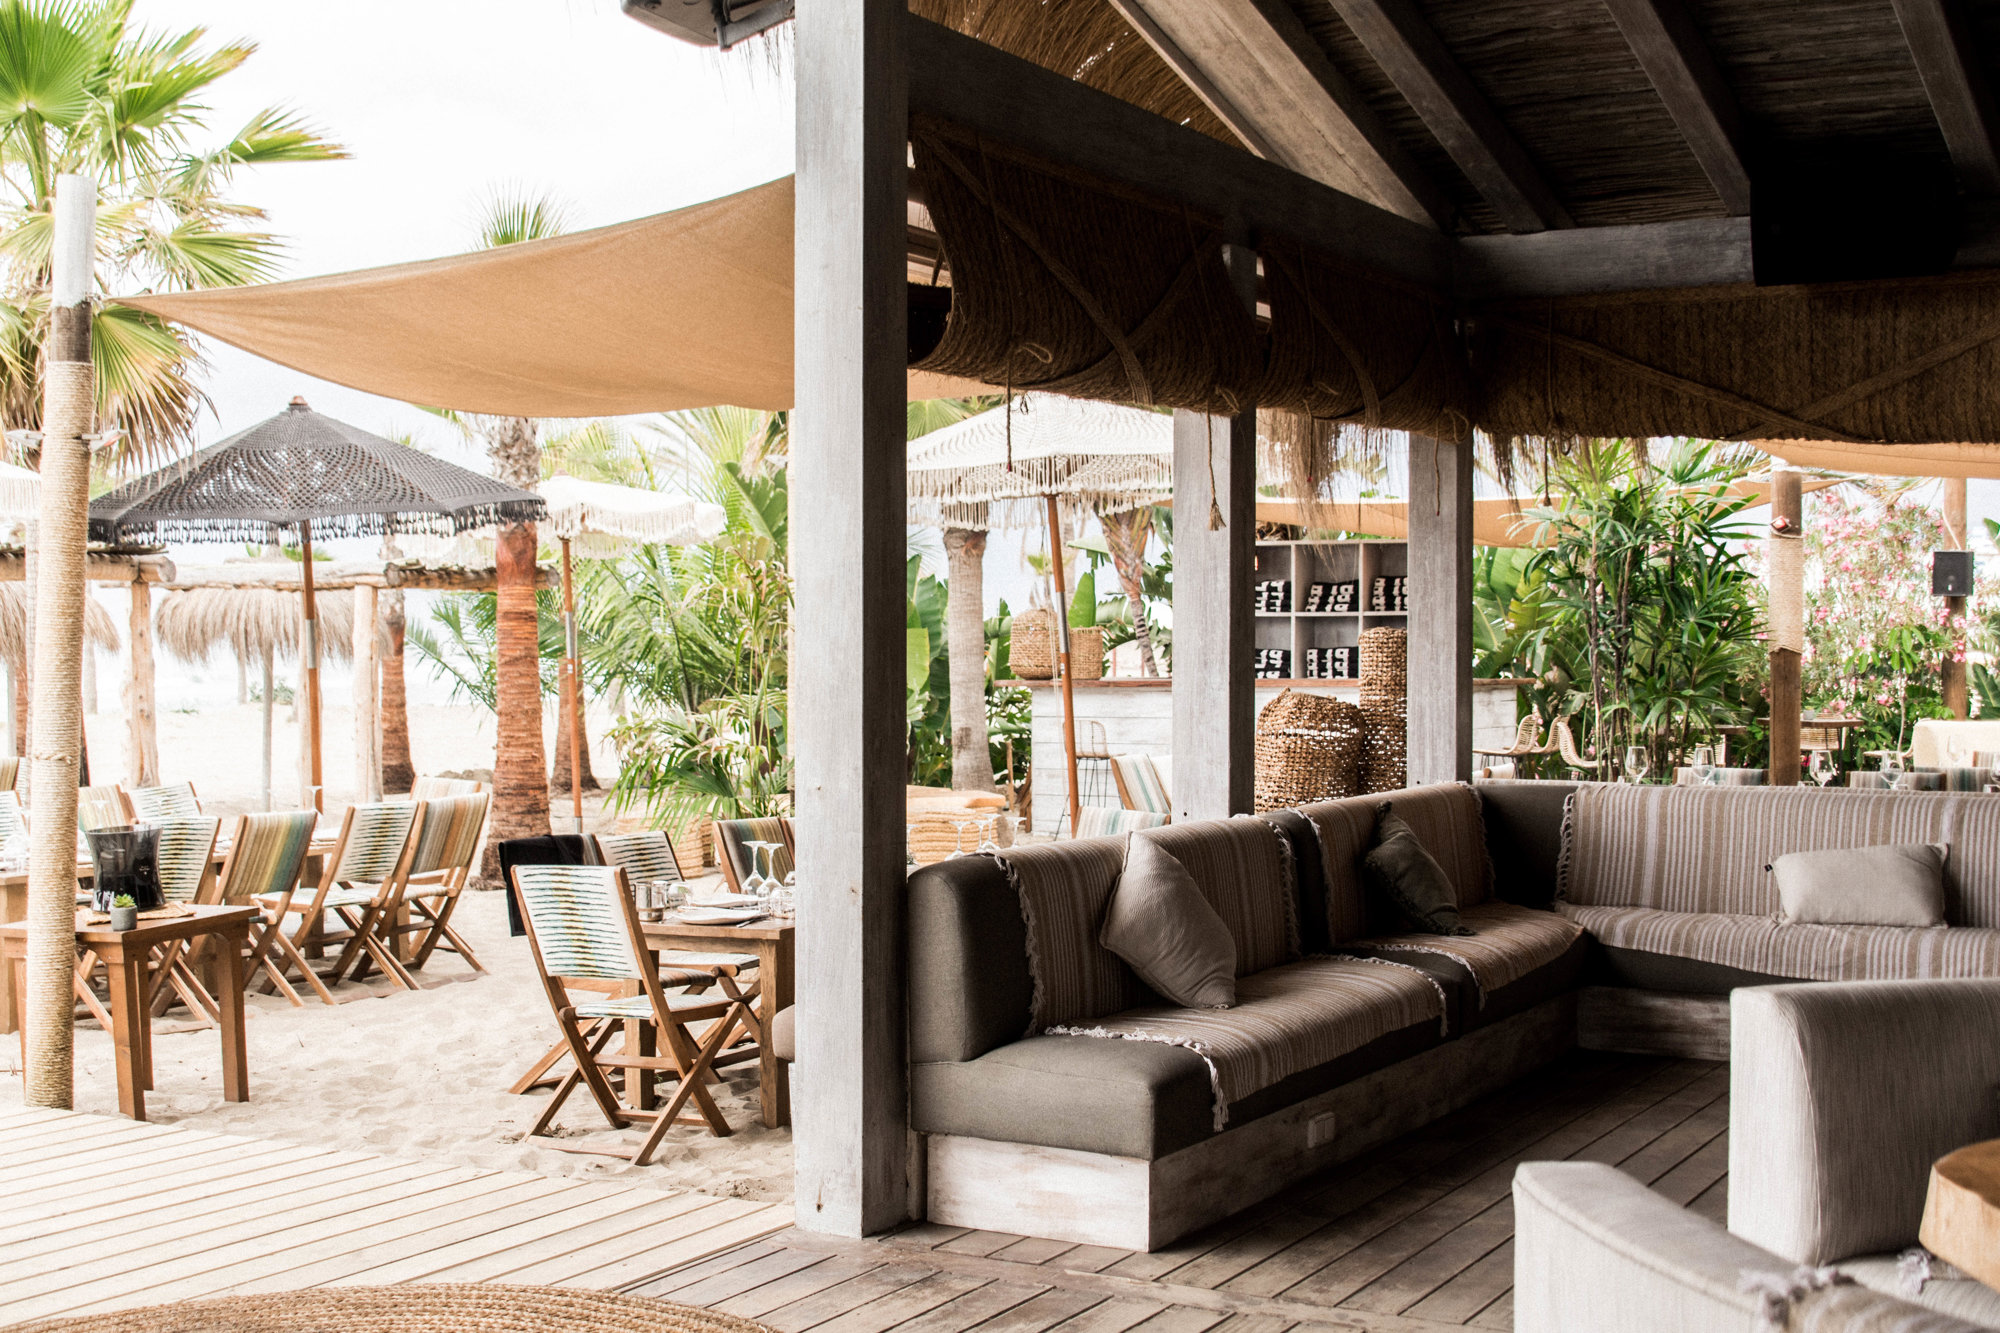 local Playa Padre con decoracion boho chic, sofas grises y parte de la terraza con palemeras